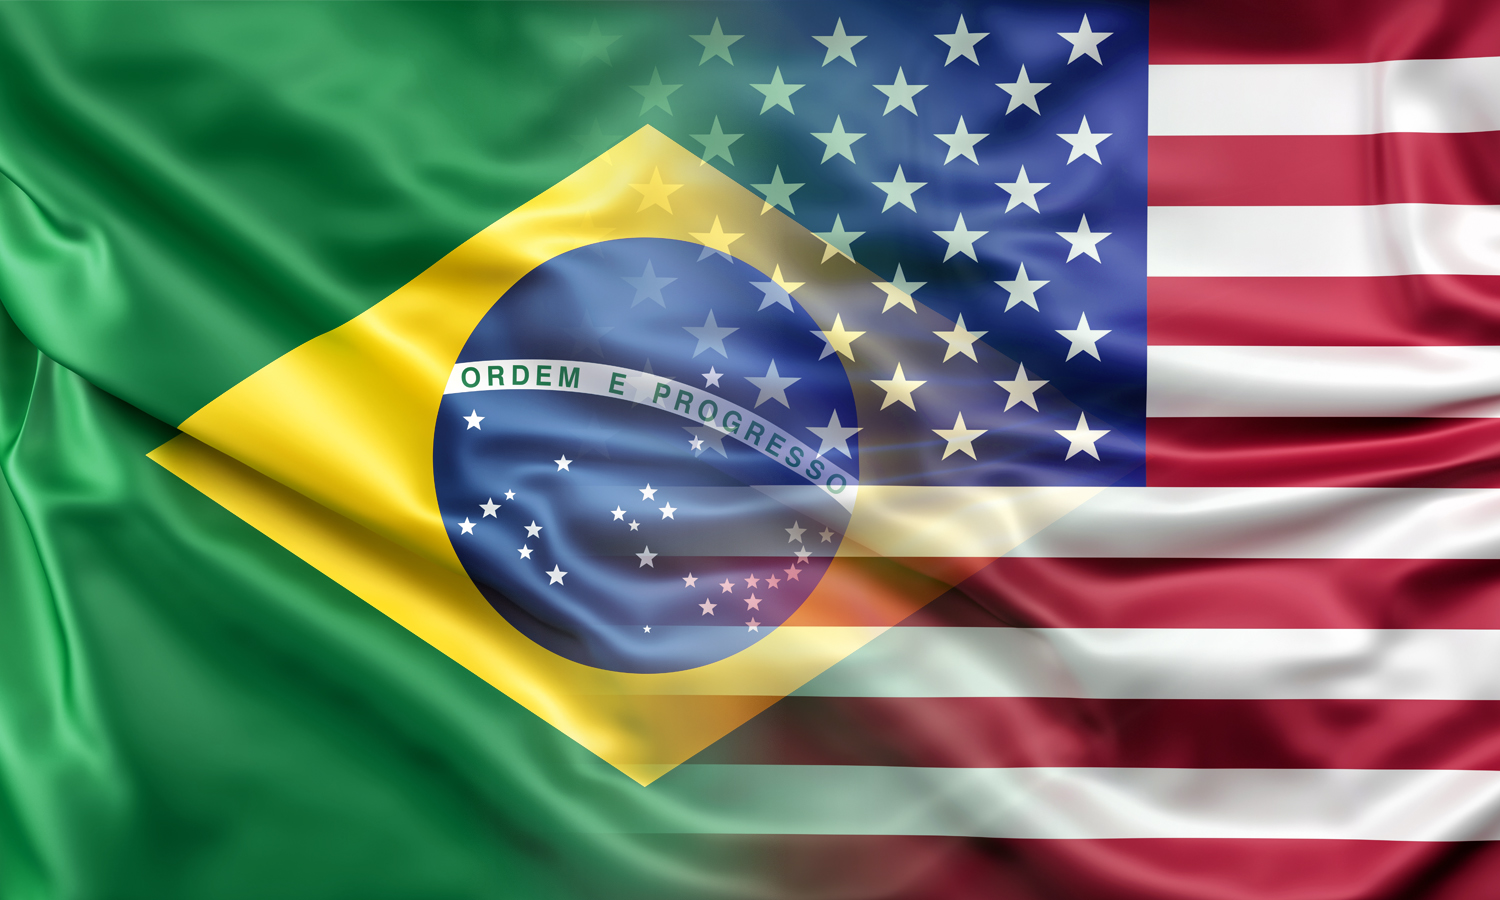 https://www.gov.br/secretariageral/pt-br/noticias/2021/abril/presidente-bolsonaro-encaminha-ao-congresso-acordo-entre-brasil-e-eua-sobre-regras-comerciais-e-de-transparencia/brasil-usa.jpg